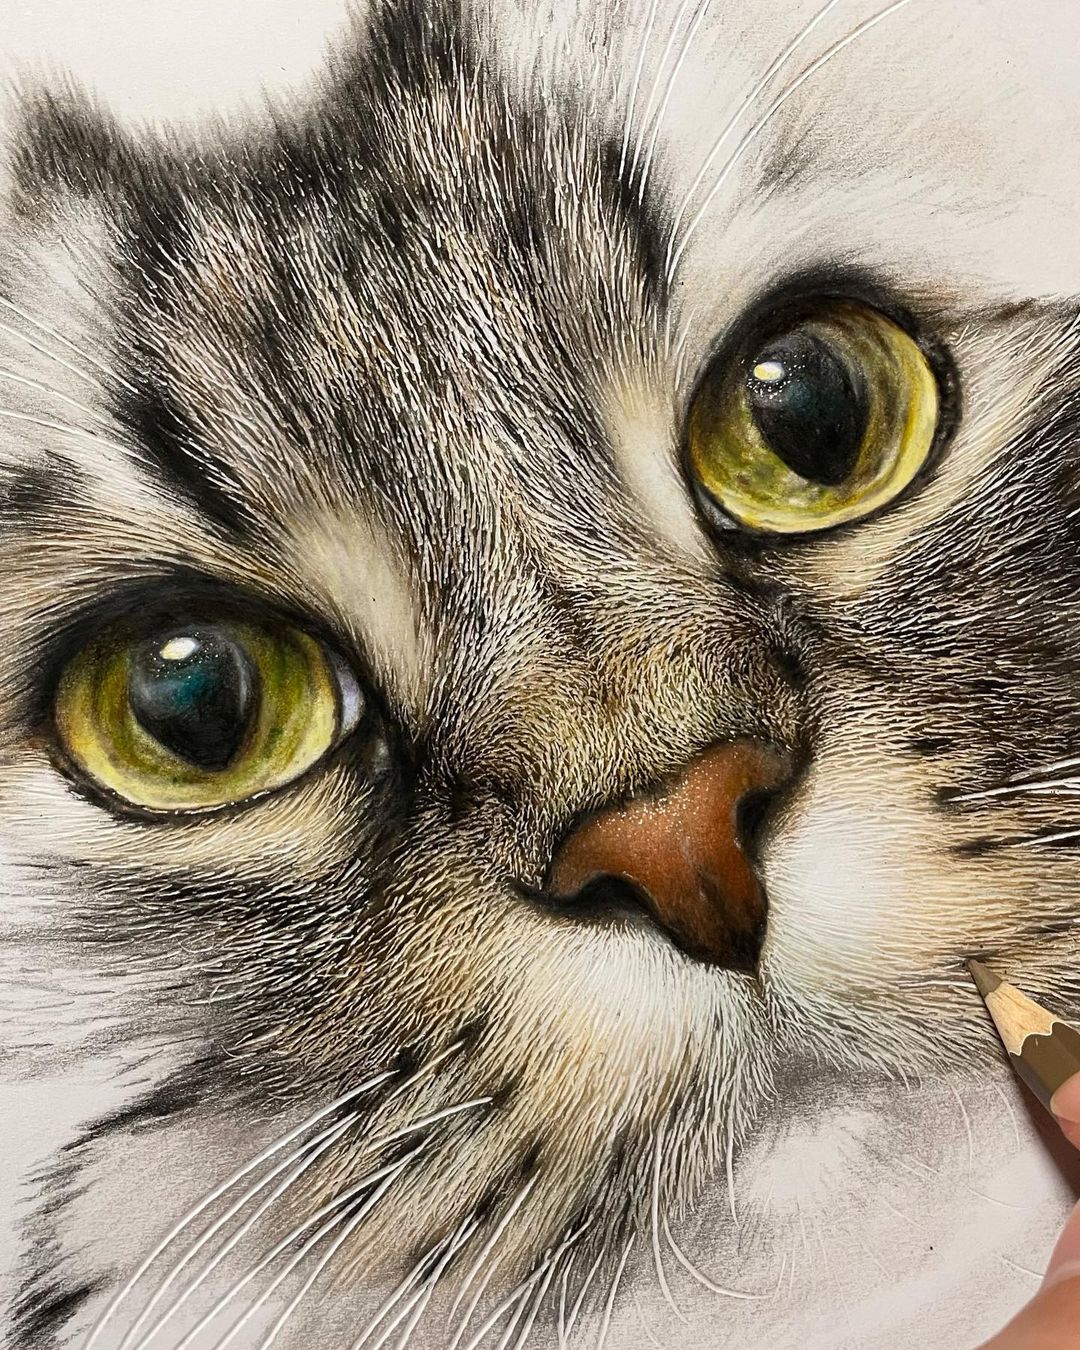 Este artista crea dibujos hiperrealistas de gatos curiosos y adorables